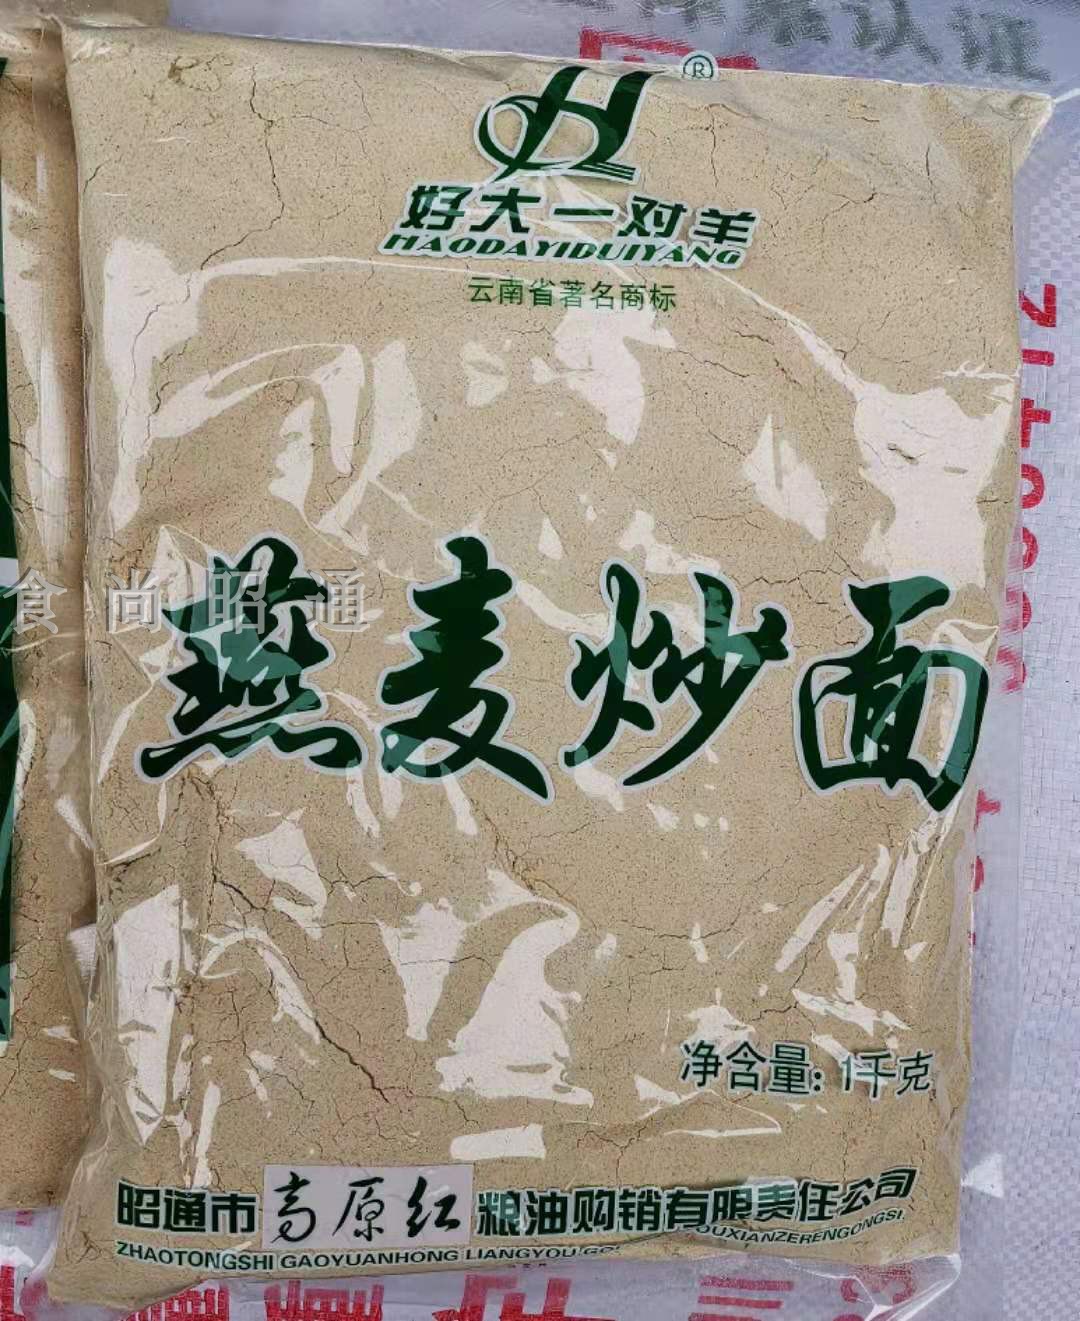 昭通特产大山包燕麦炒面粗粮杂粮熟燕麦炒面传统休闲零食买2减5元